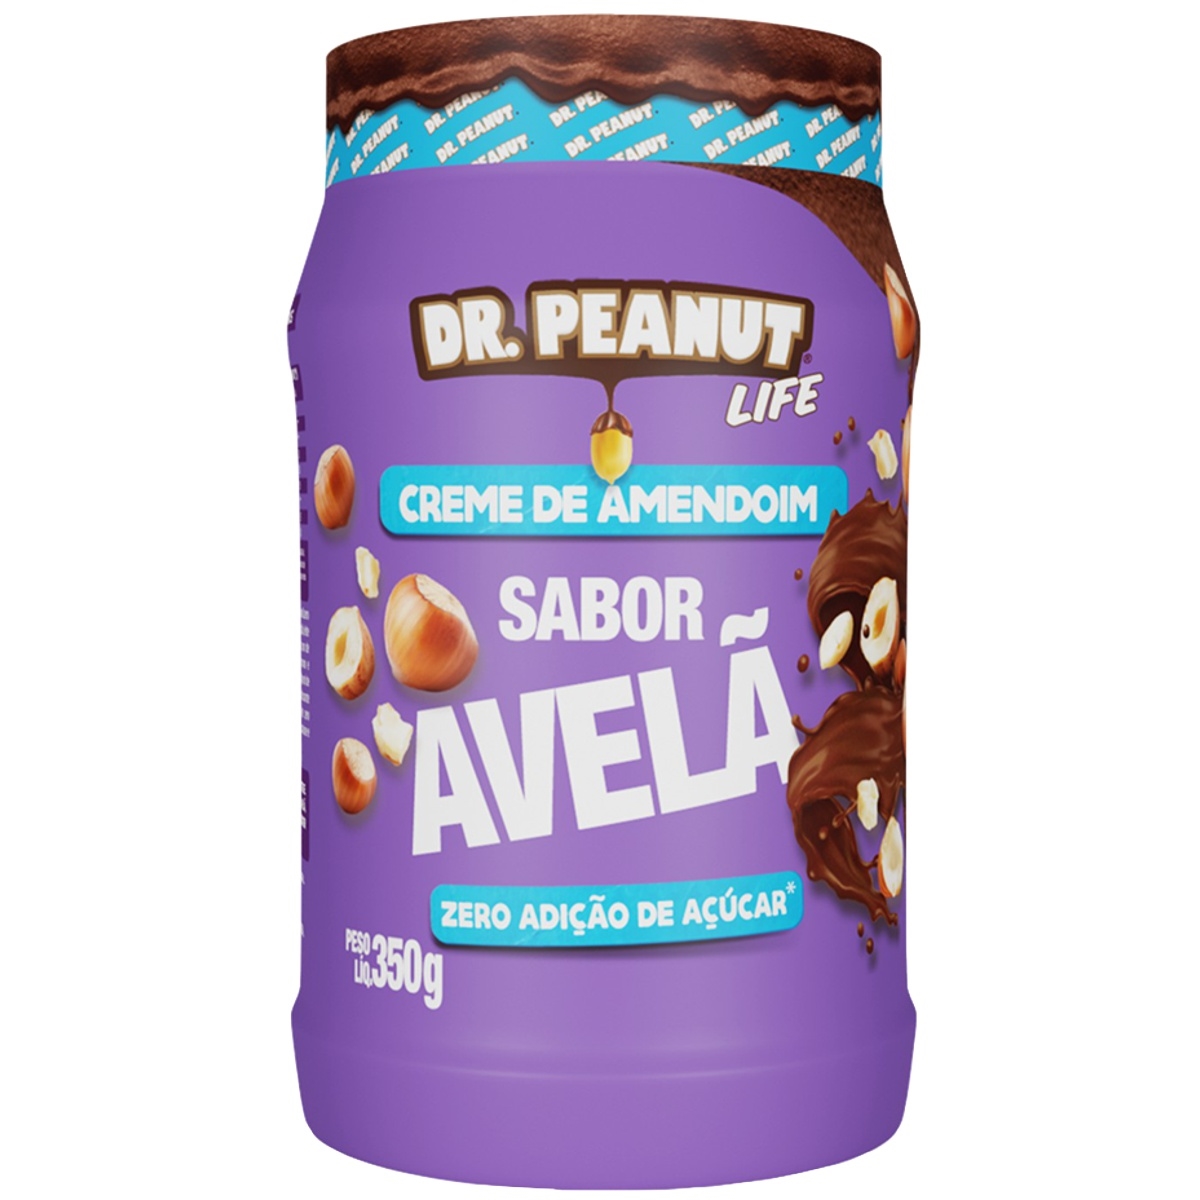 Dr Peanut - Pasta de Amendoim 350g - CREME DE AMENDOIM LIFE COM